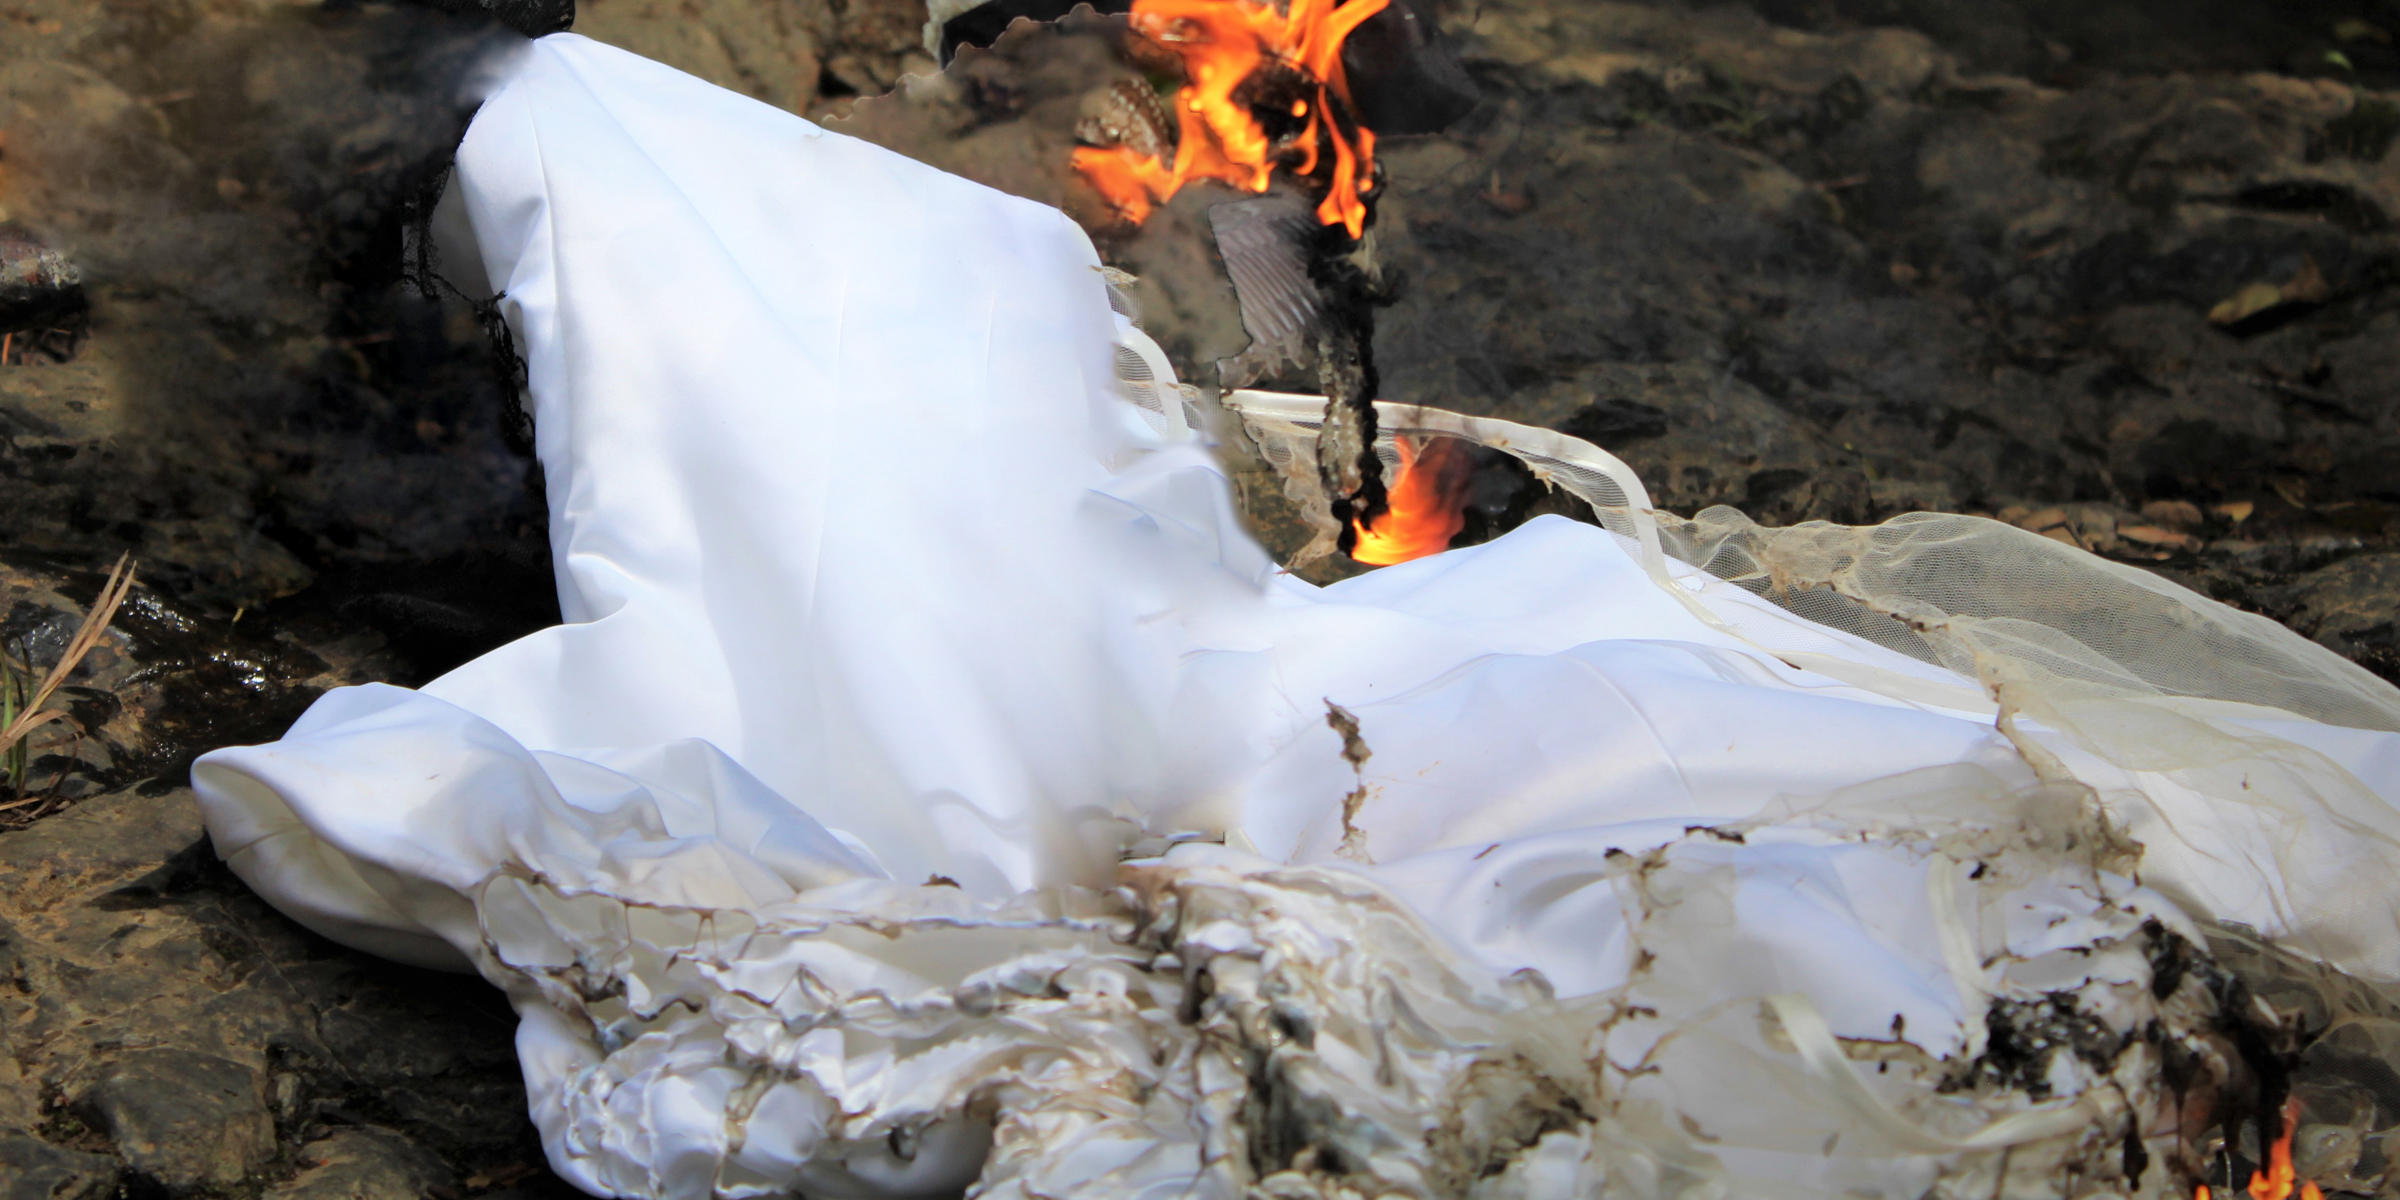 Vestido de novia en llamas | Fuente: Shutterstock